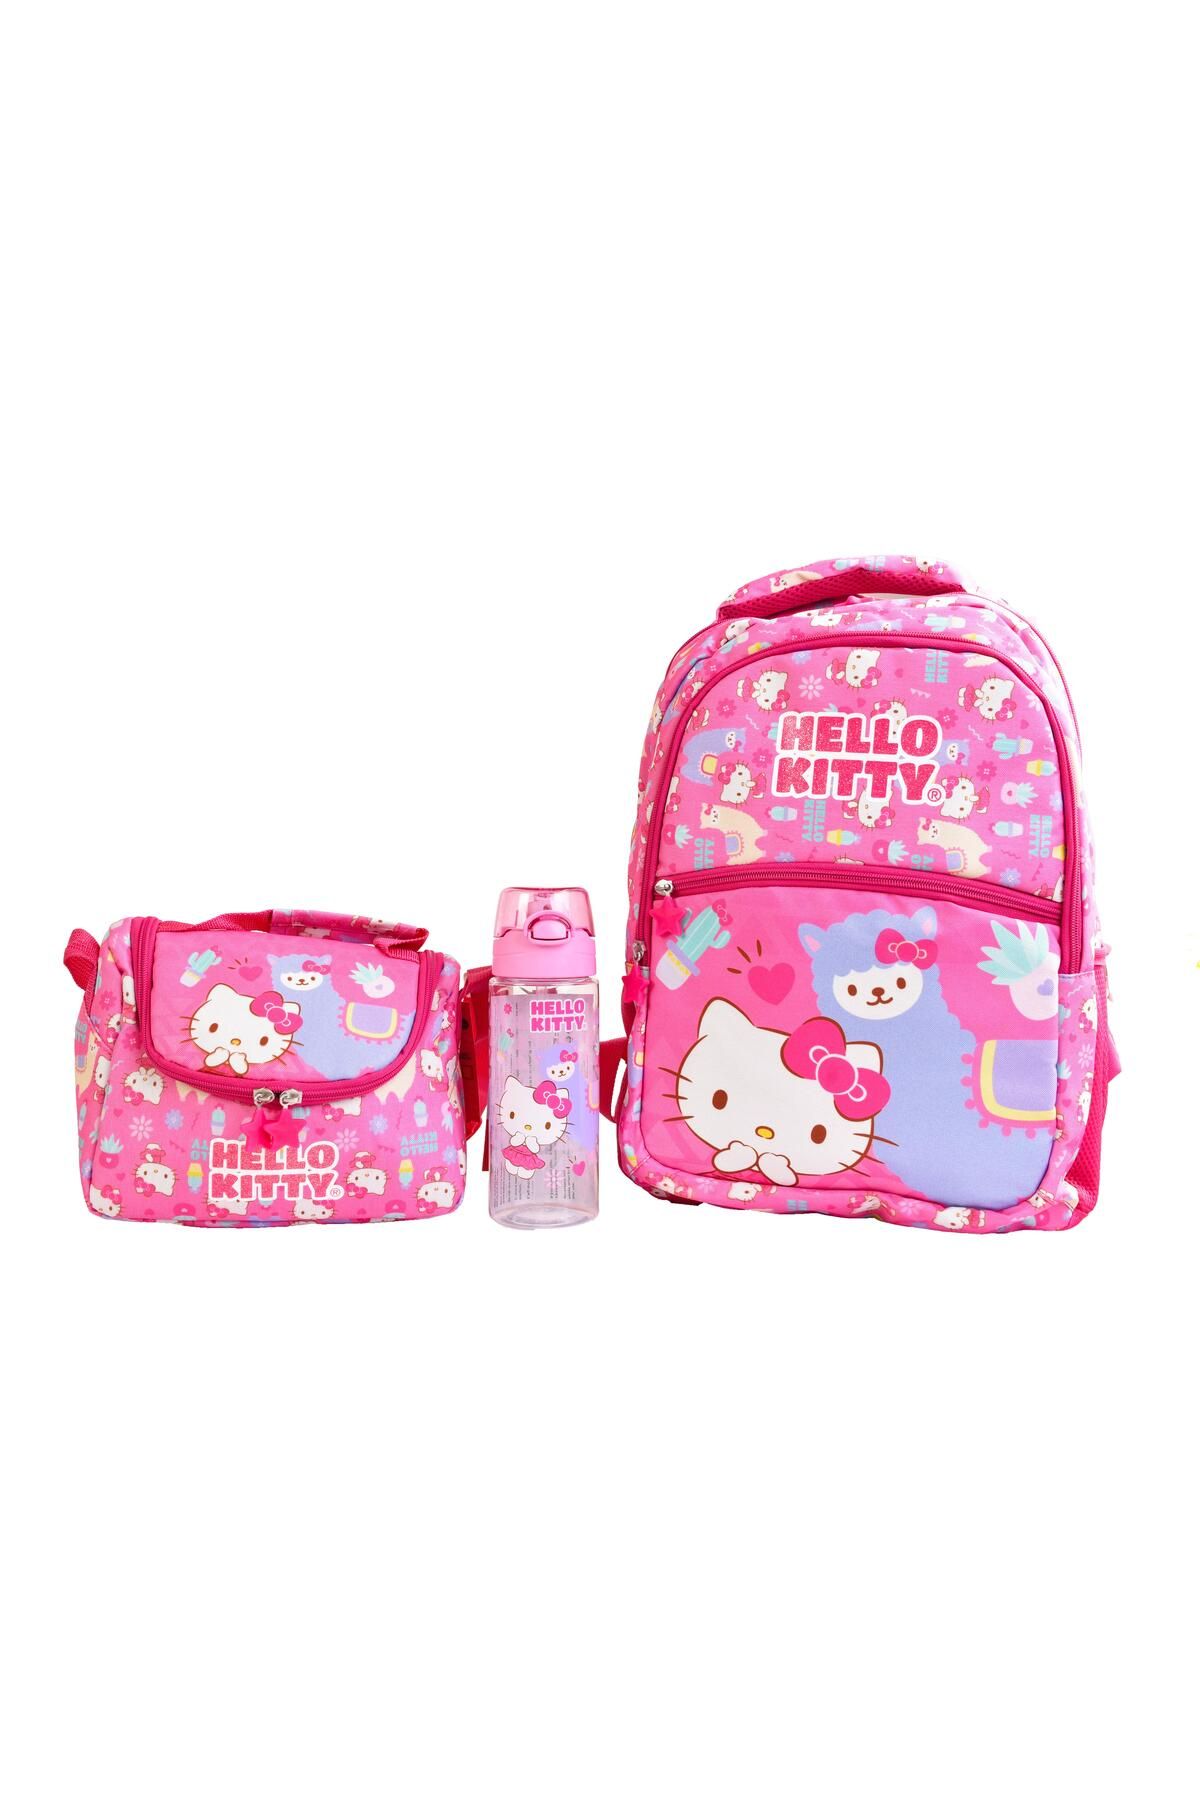 MODAONN Hello Kitty Kız Çocuk İlkokul Çantası Seti / Okul Çantası Seti